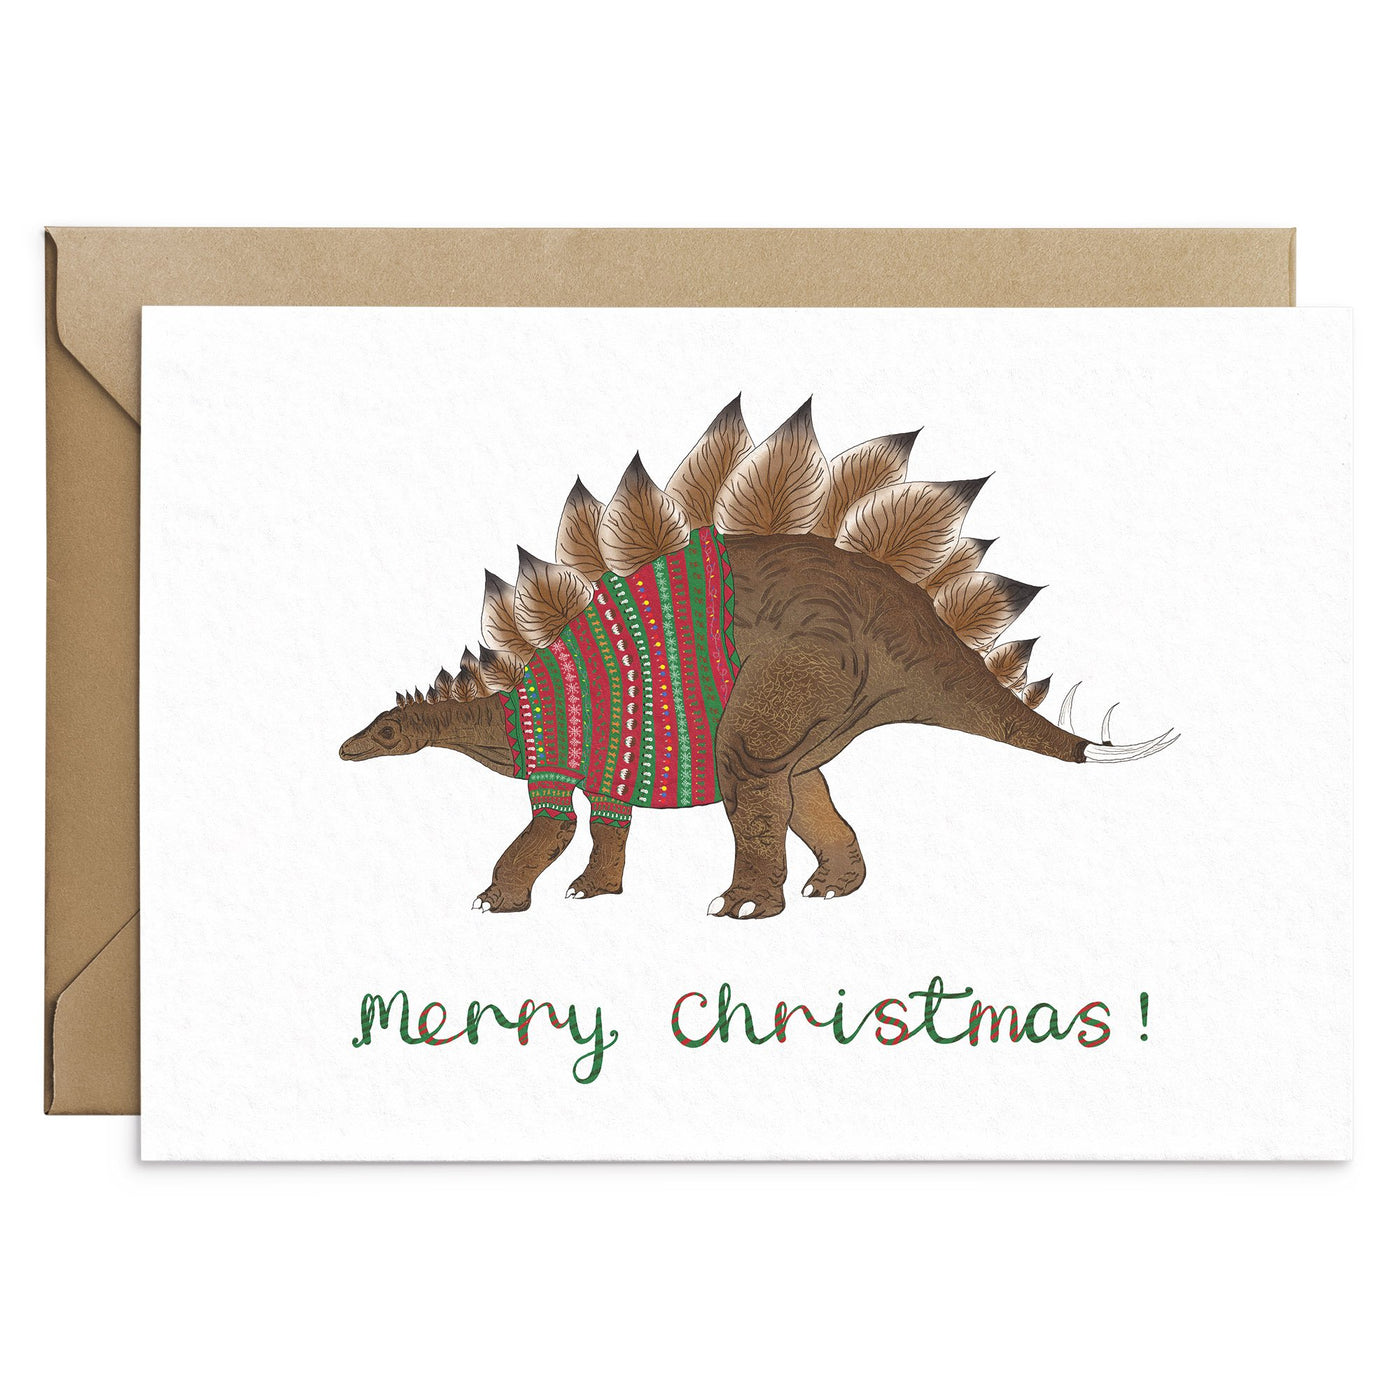 The Stegosaurus Dinosaur Christmas Card - Poppins & Co.